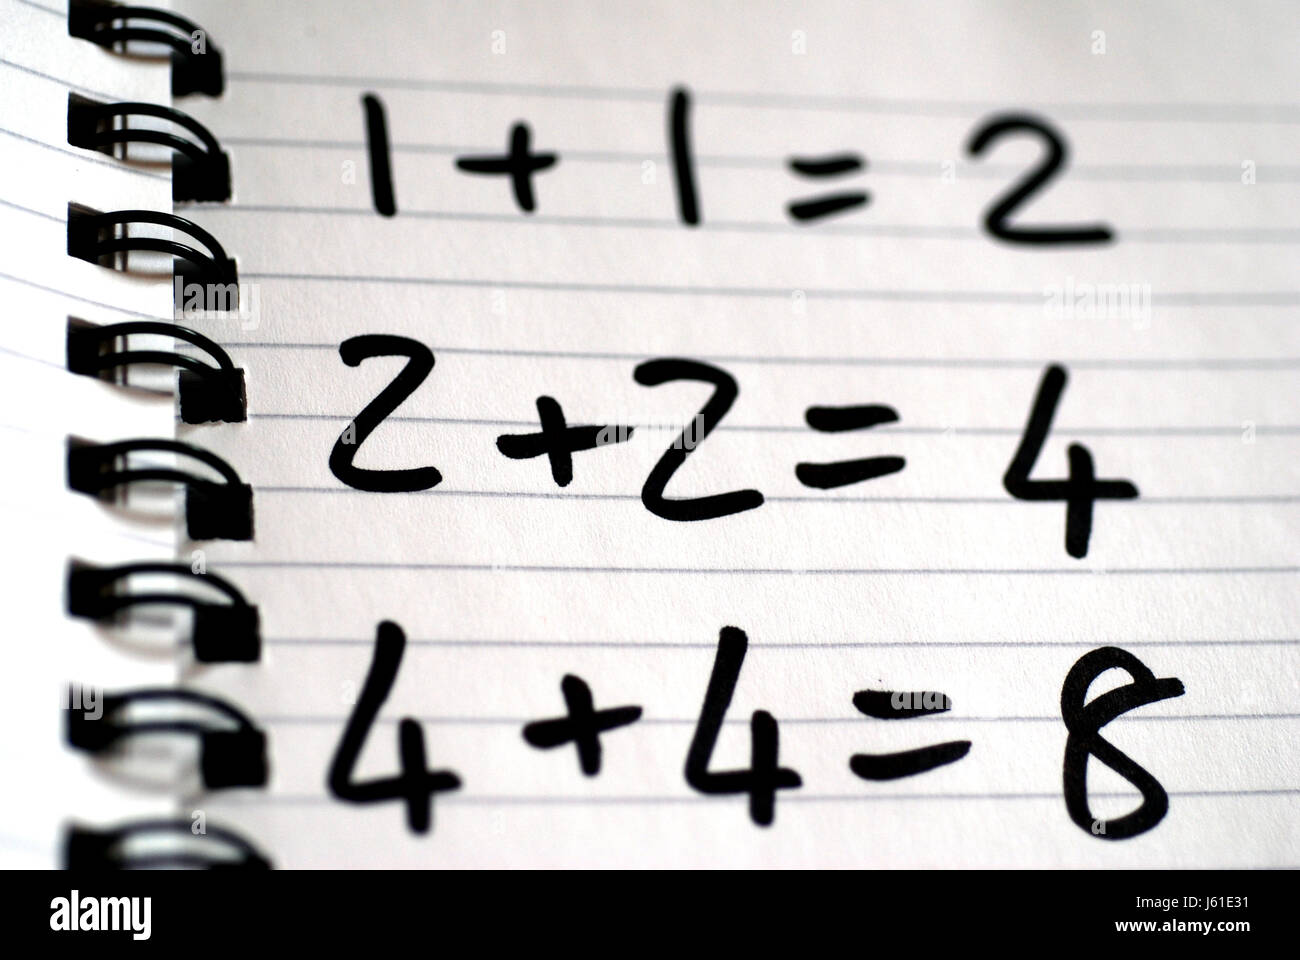 Mathematik Notebook Math zusätzlich Zahlen schreiben schrieb, dass schreiben Schrift schreibt Stockfoto